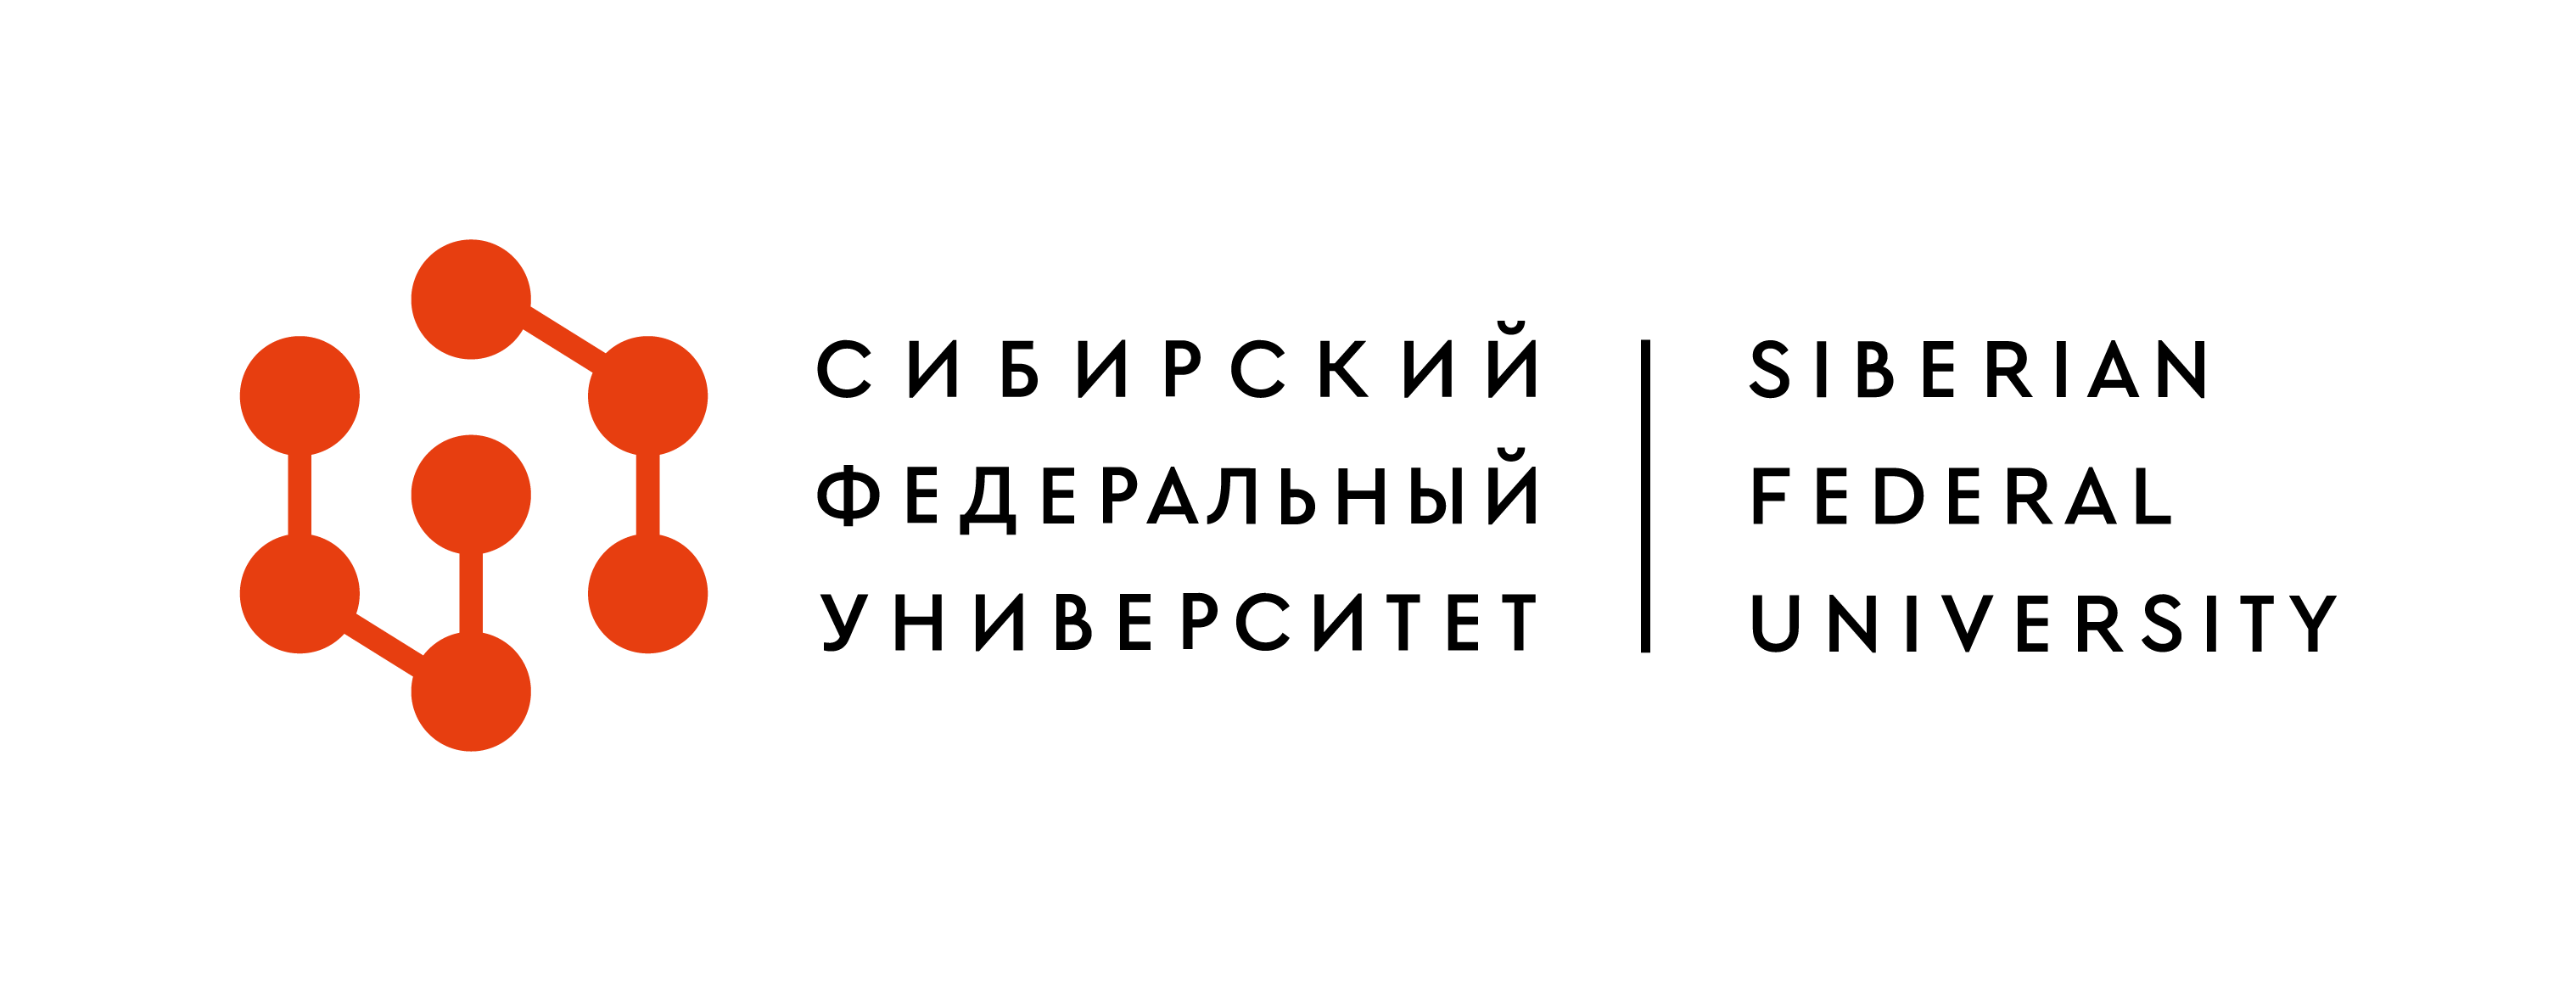 логотип СФУ 2020 года